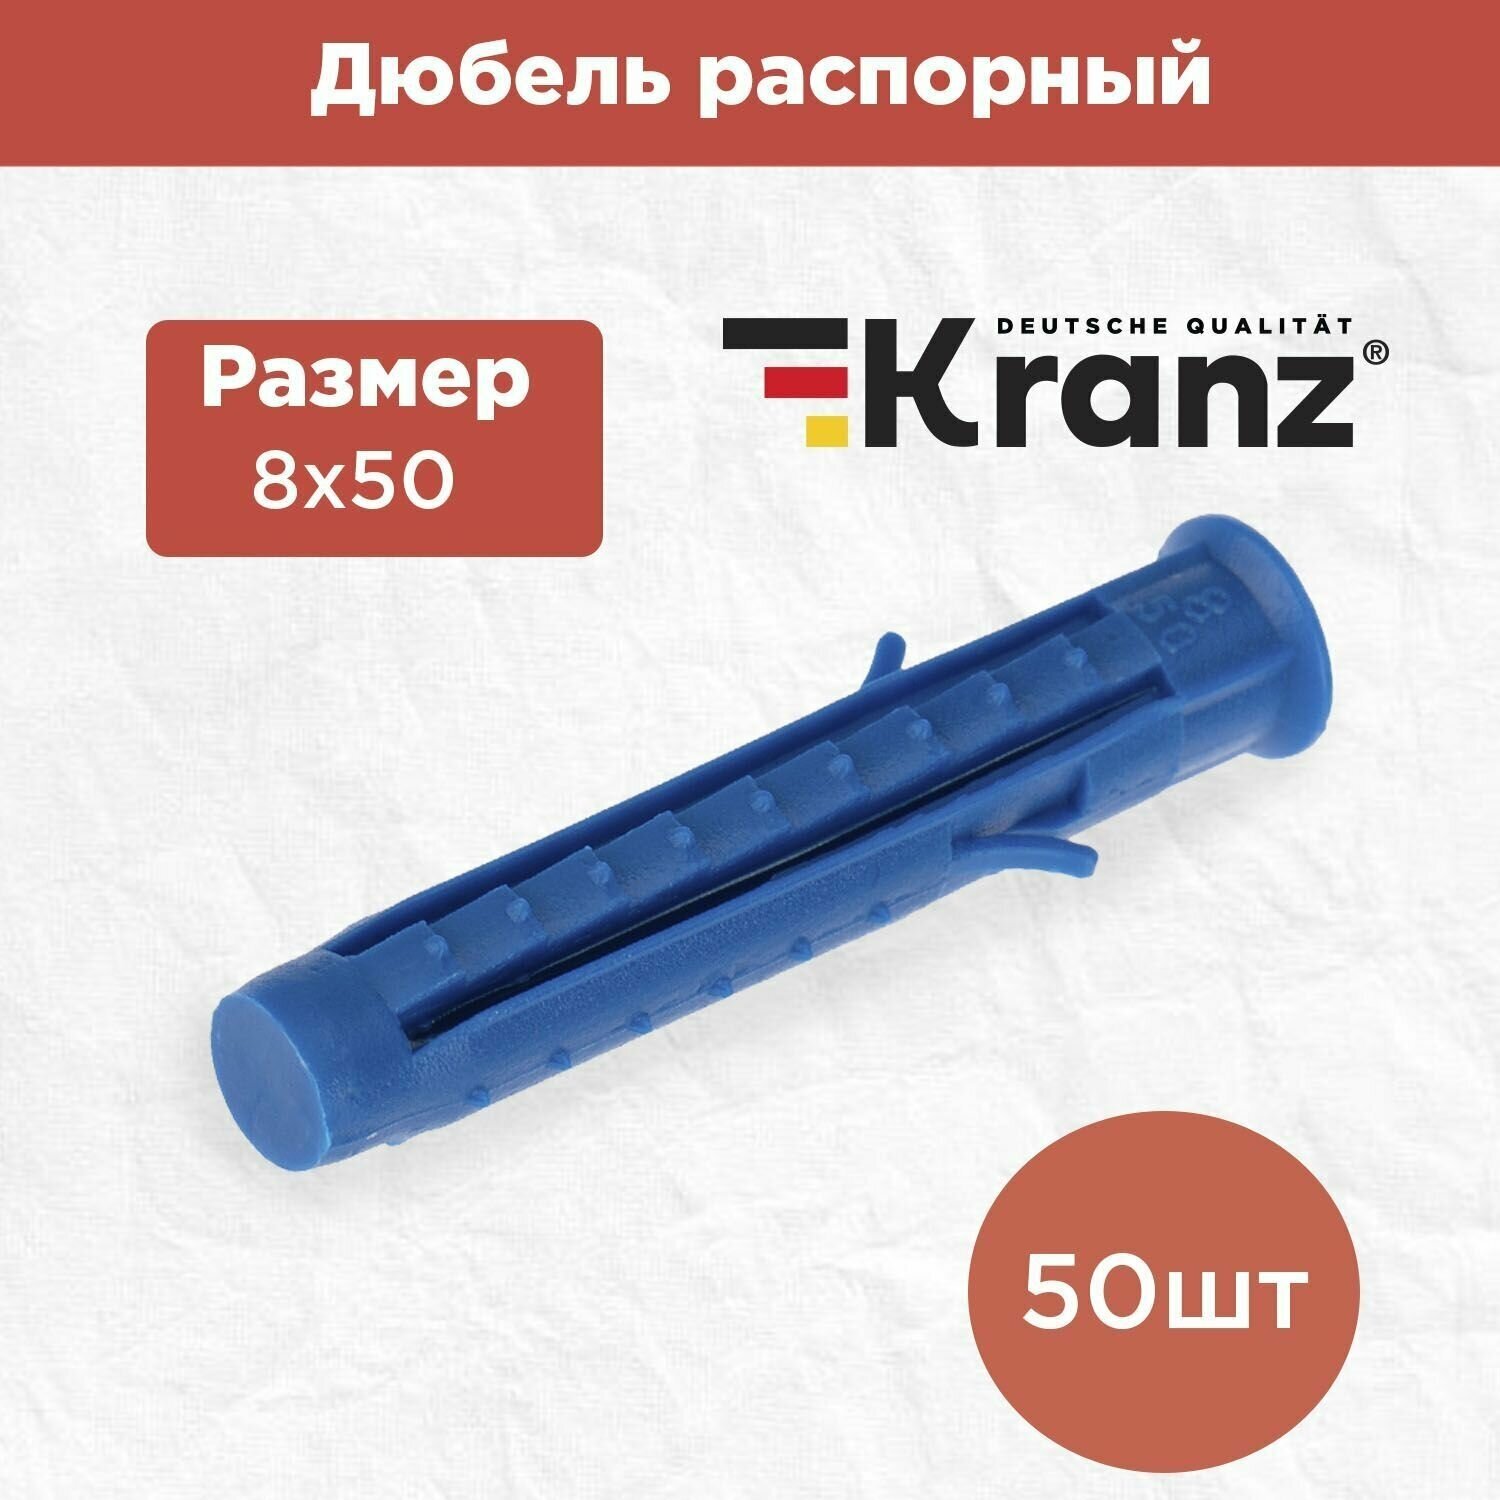 Дюбель распорный KRANZ высокопрочный 8х50, синий, 50 штук в упаковке